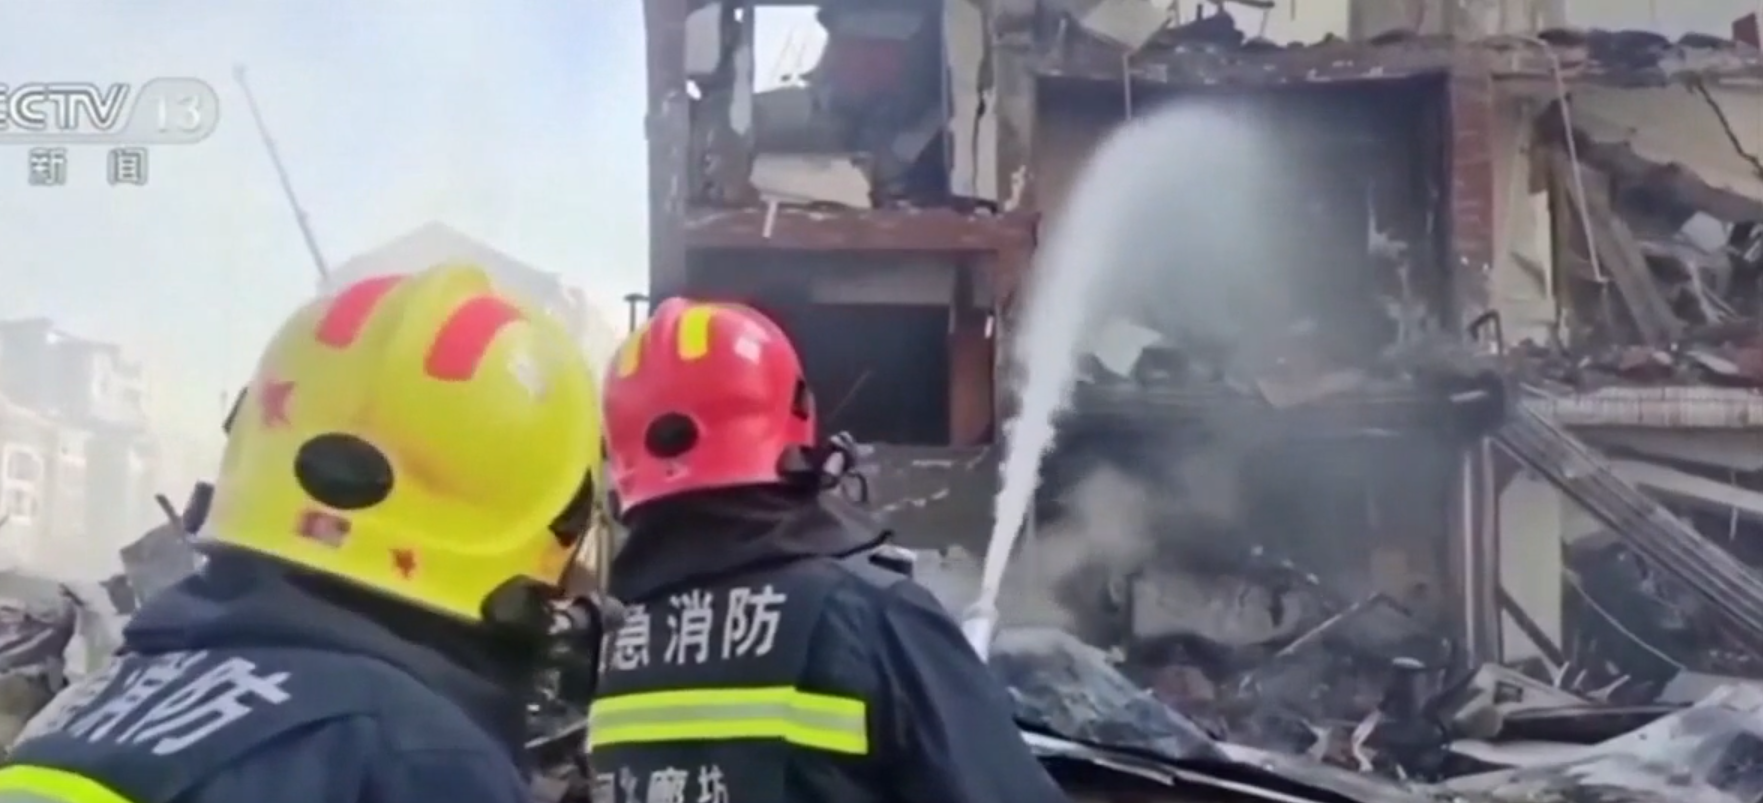 Egy ember meghalt, többen megsérültek egy észak-kínai robbanásban